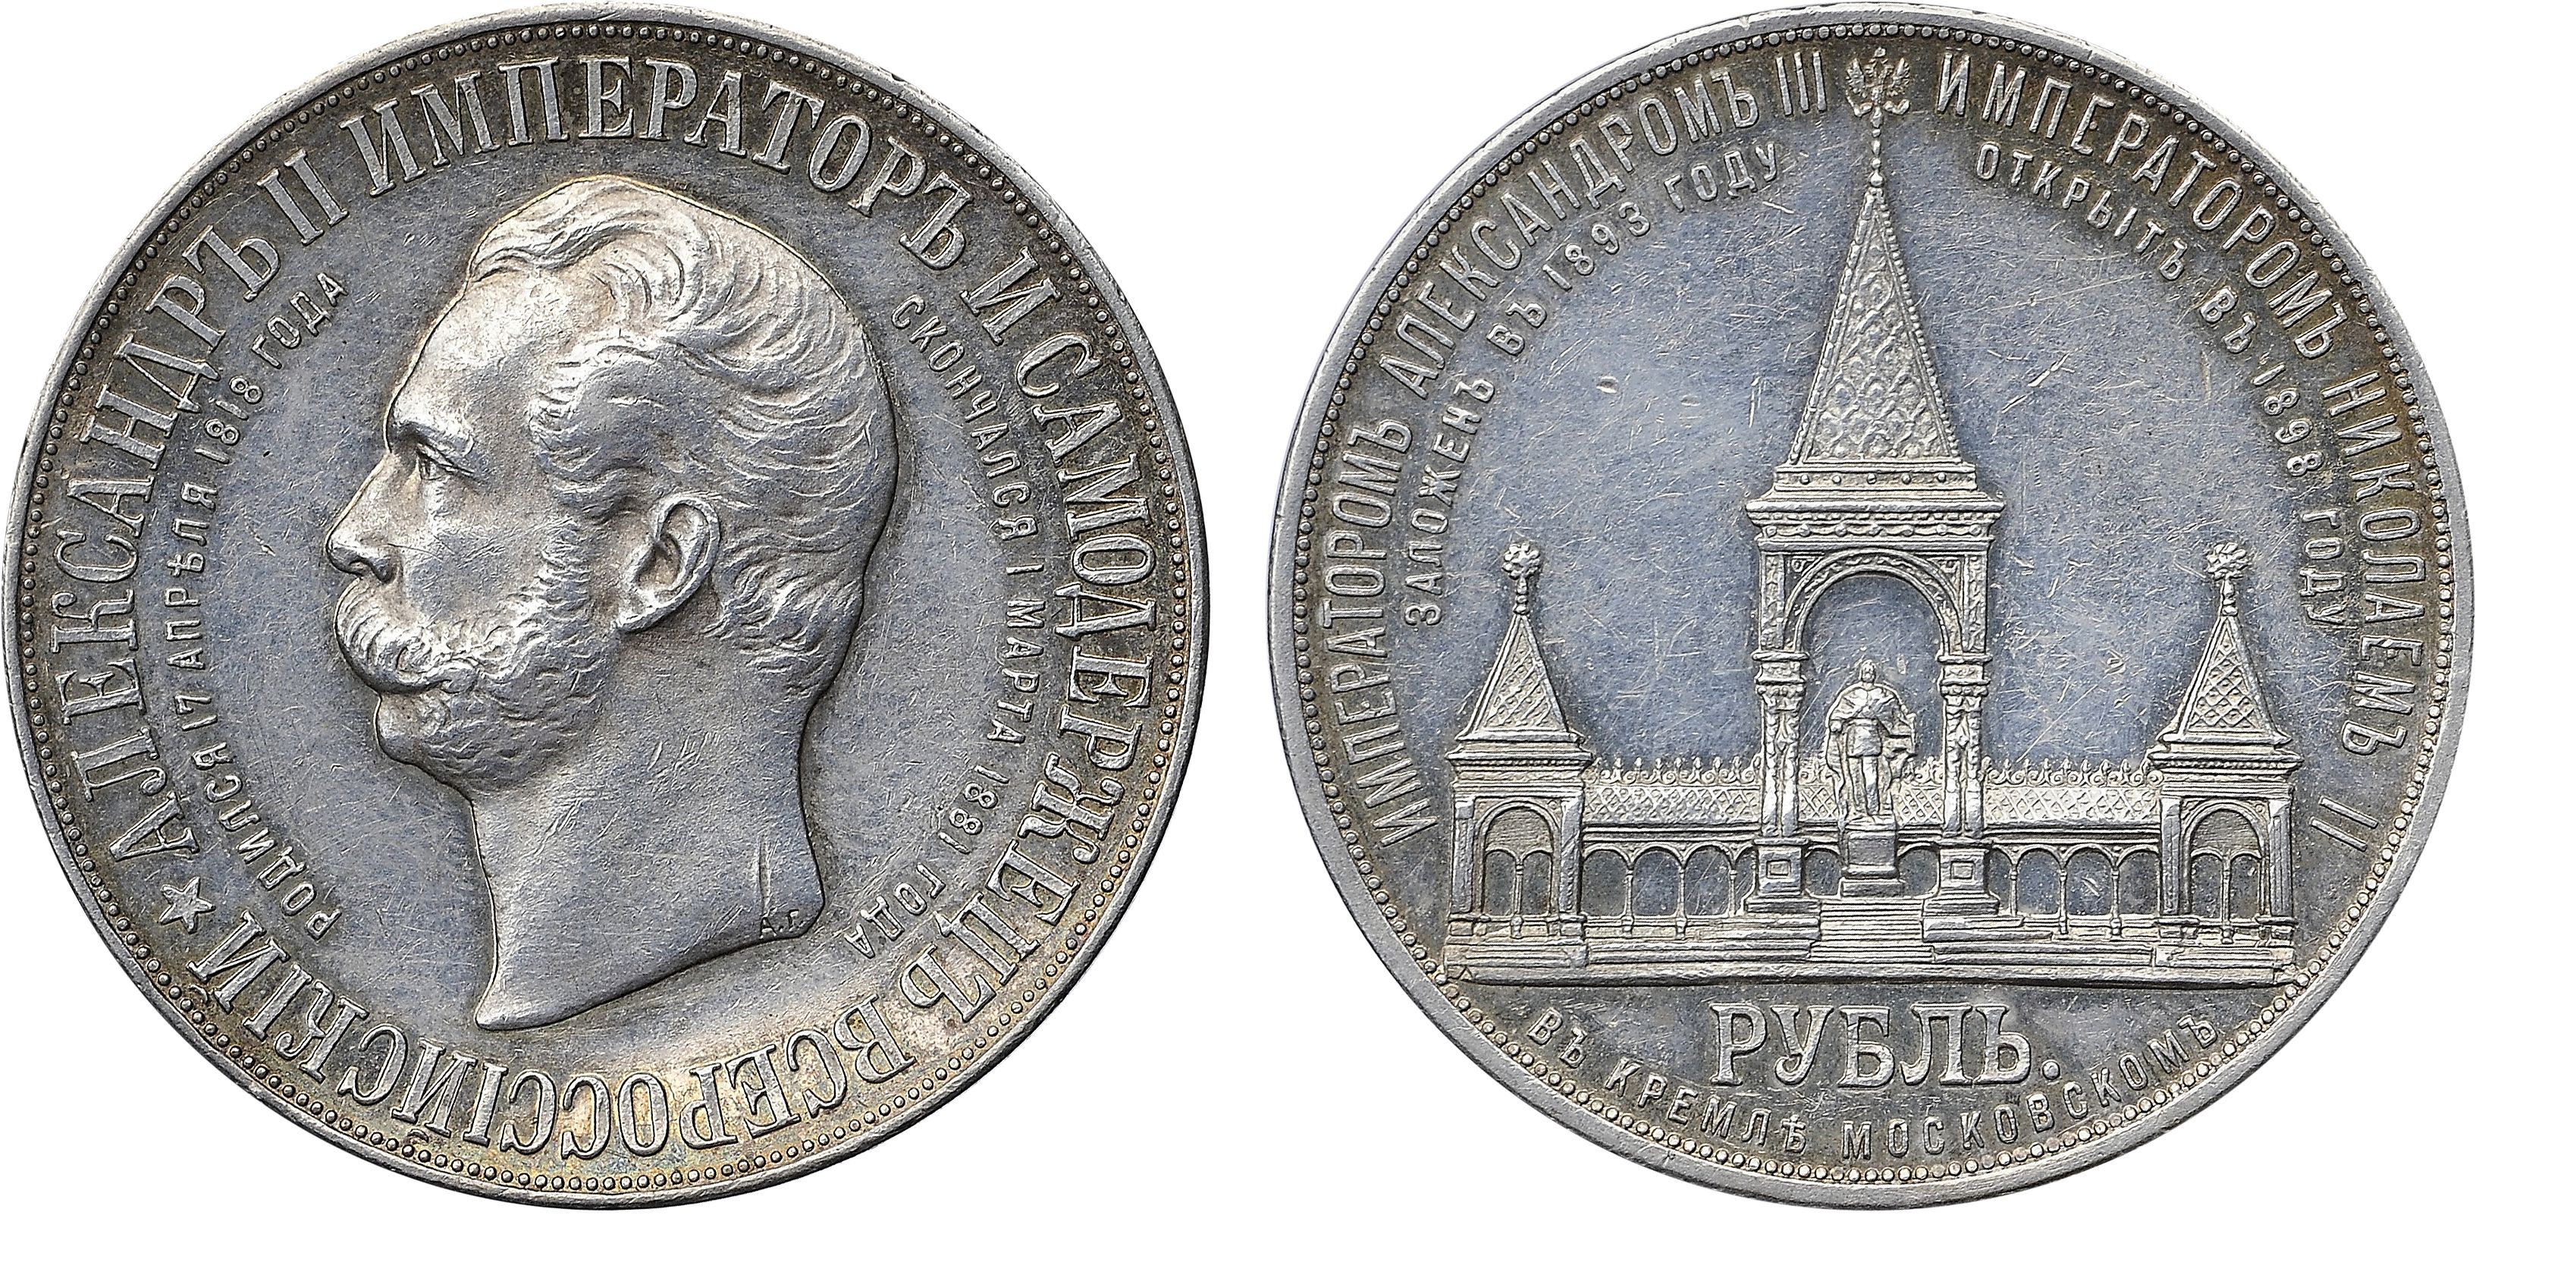 422. 1 Рубль 1898 г. АГ (на обеих сторонах монеты). «По случаю открытия памятника Александру II».